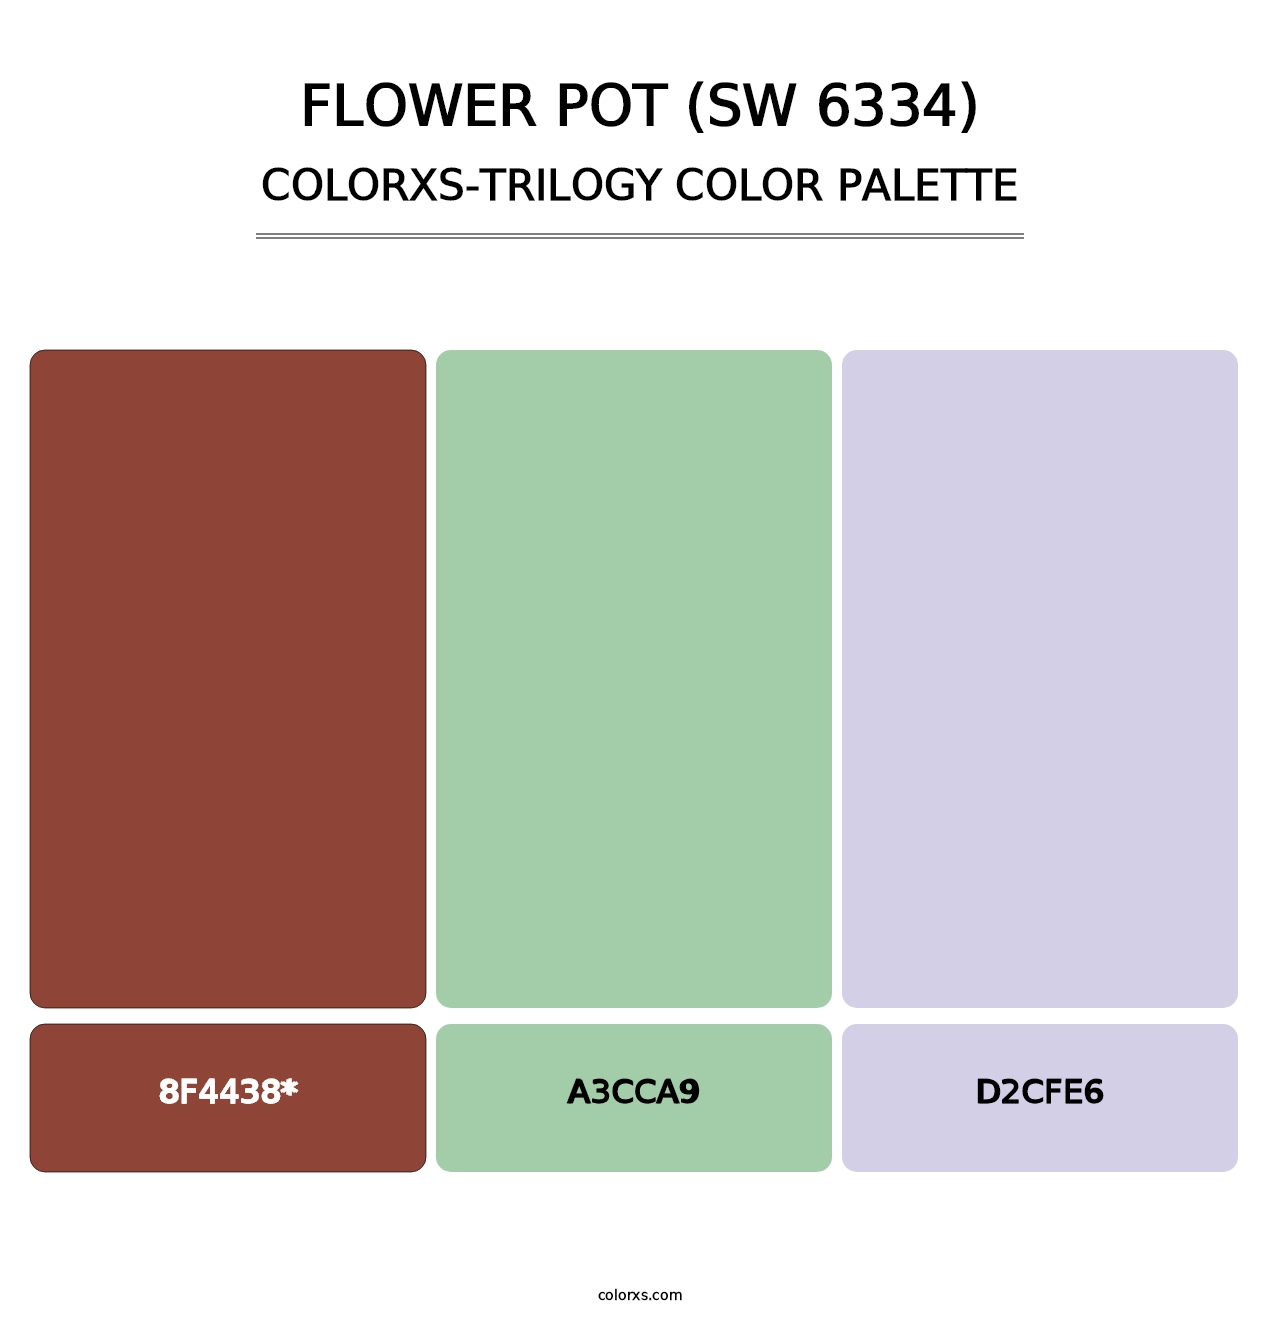 Flower Pot (SW 6334) - Colorxs Trilogy Palette